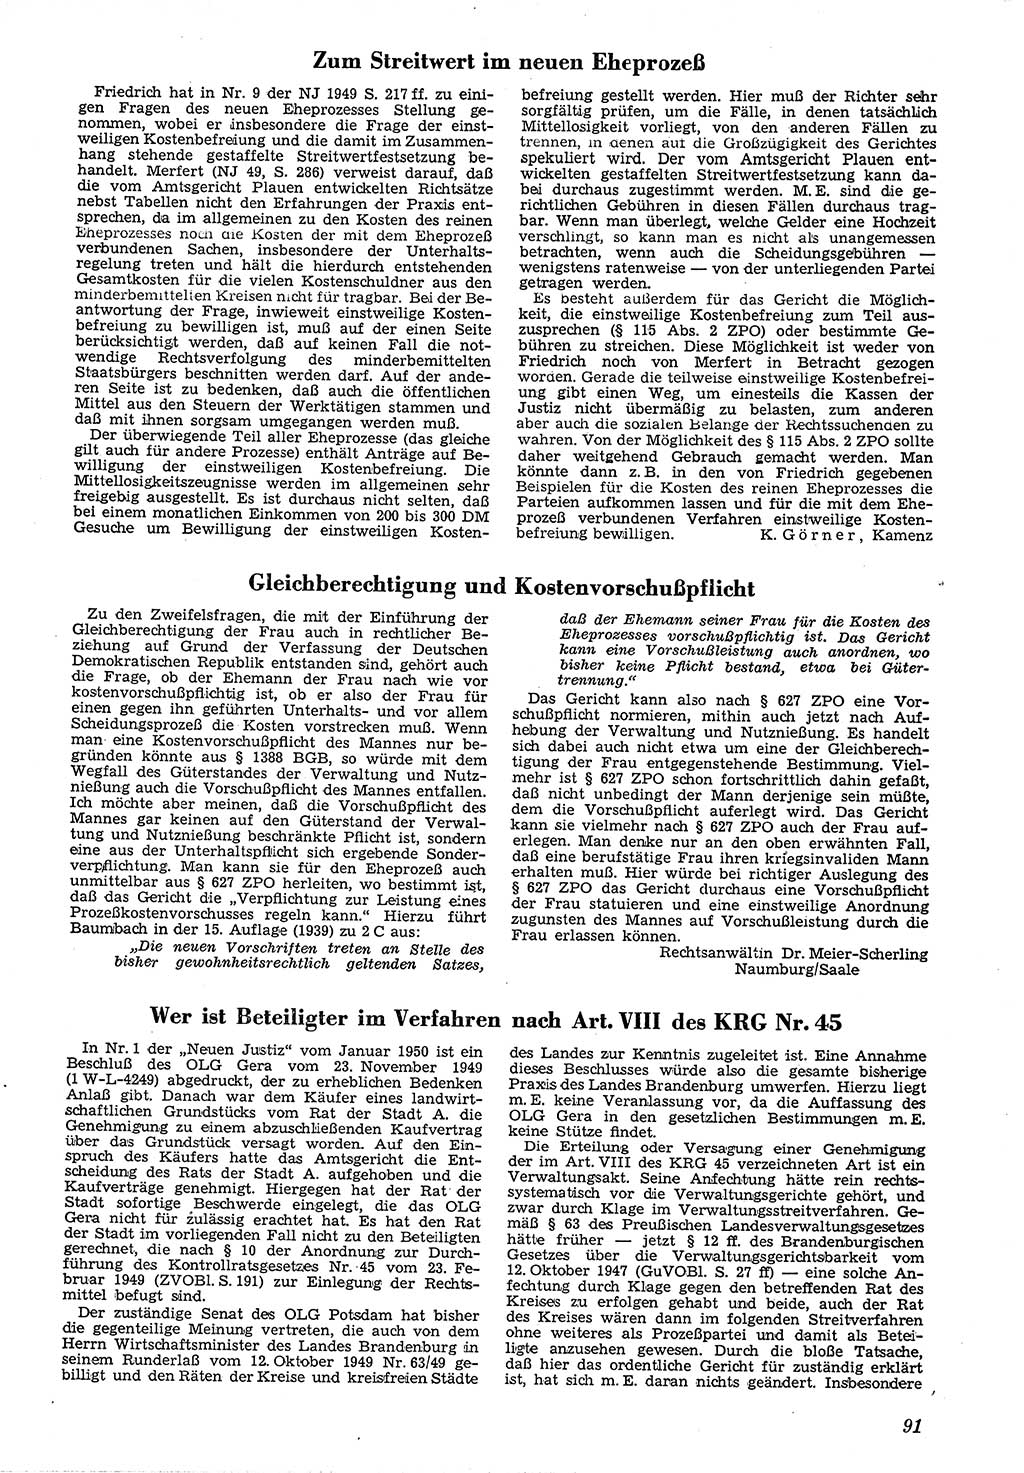 Neue Justiz (NJ), Zeitschrift für Recht und Rechtswissenschaft [Deutsche Demokratische Republik (DDR)], 4. Jahrgang 1950, Seite 91 (NJ DDR 1950, S. 91)